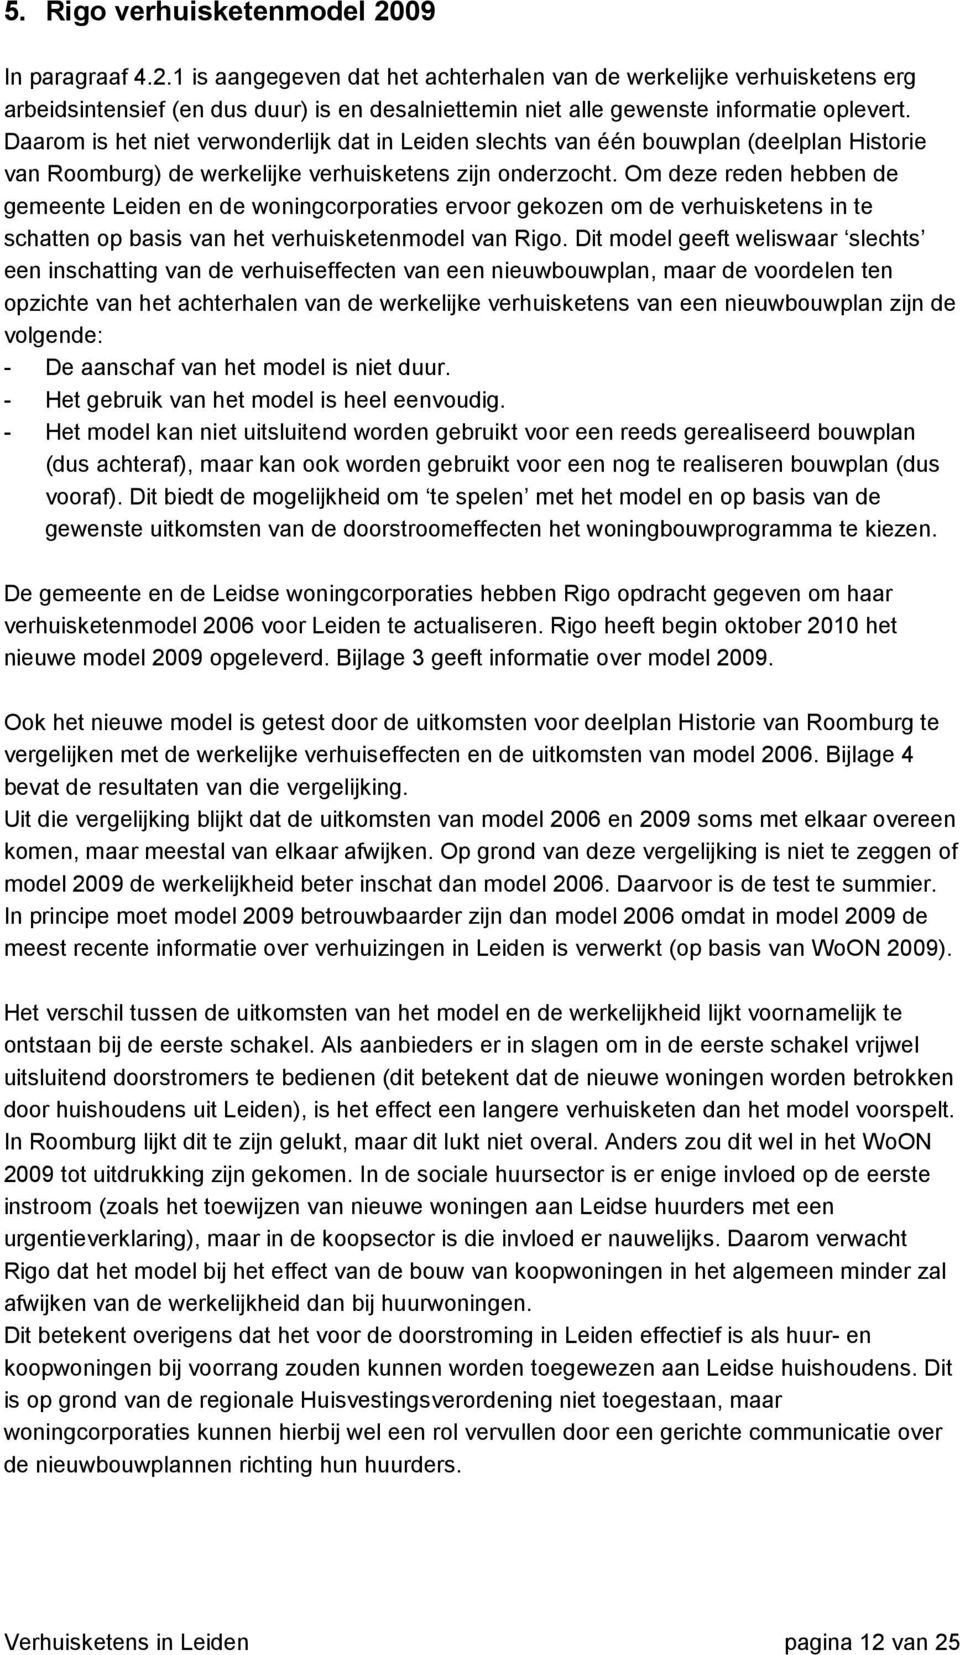 Om deze reden hebben de gemeente Leiden en de woningcorporaties ervoor gekozen om de verhuisketens in te schatten op basis van het verhuisketenmodel van Rigo.